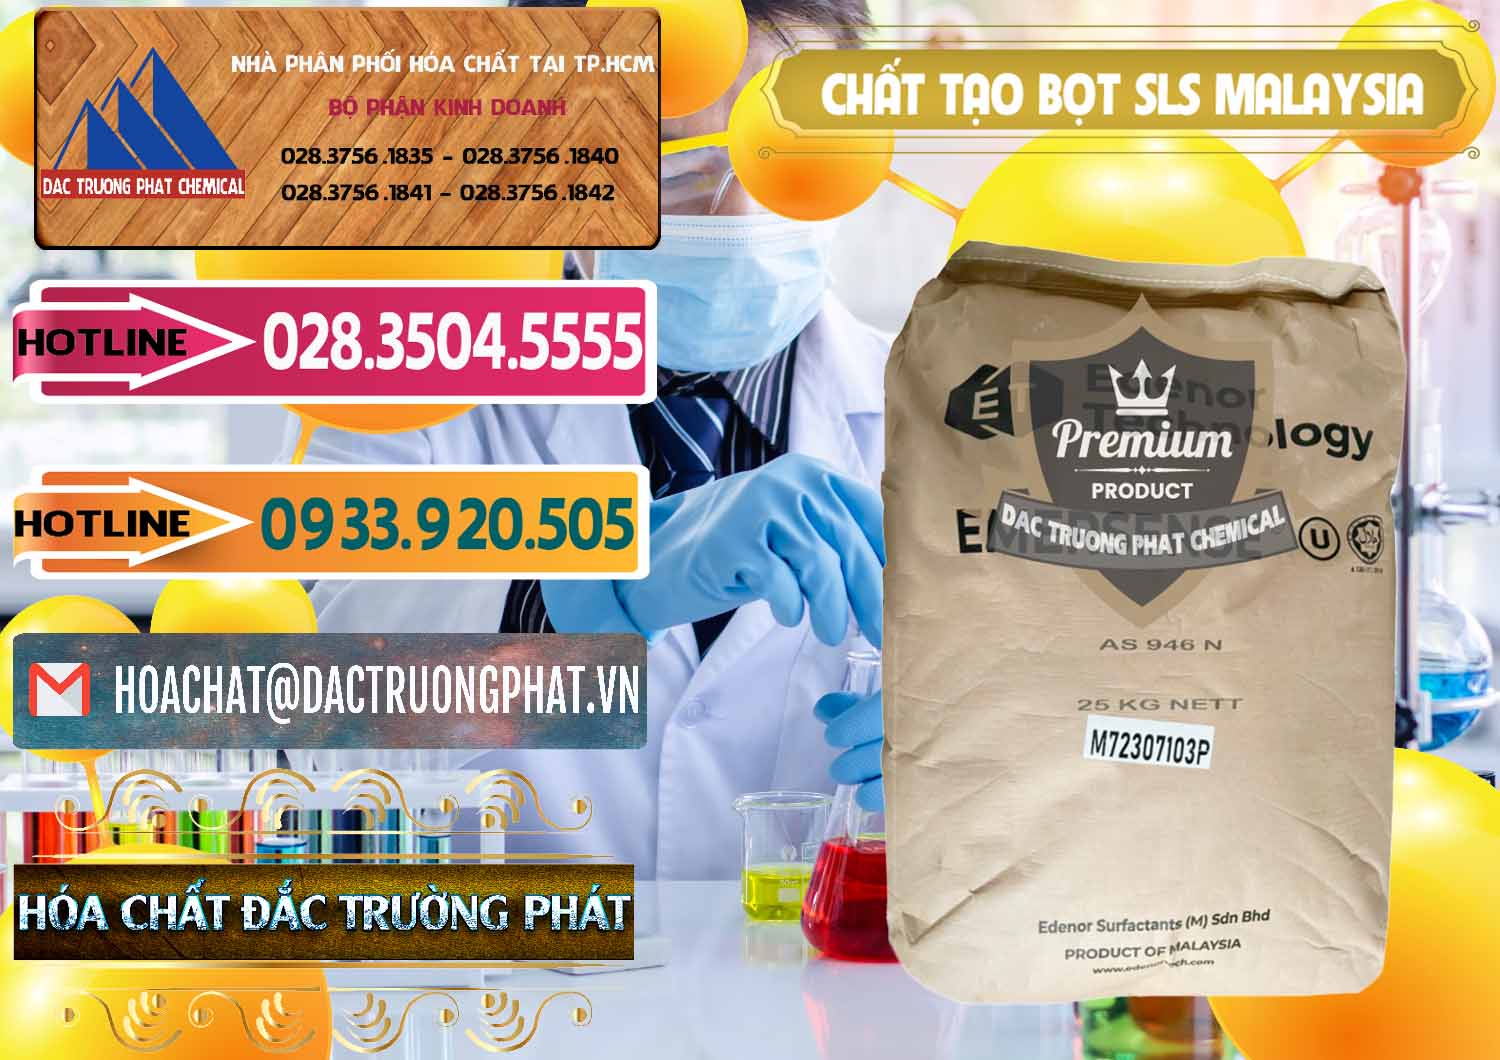 Chuyên cung ứng & bán Chất Tạo Bọt SLS Emersense Mã Lai Malaysia - 0381 - Nơi cung cấp _ phân phối hóa chất tại TP.HCM - dactruongphat.vn